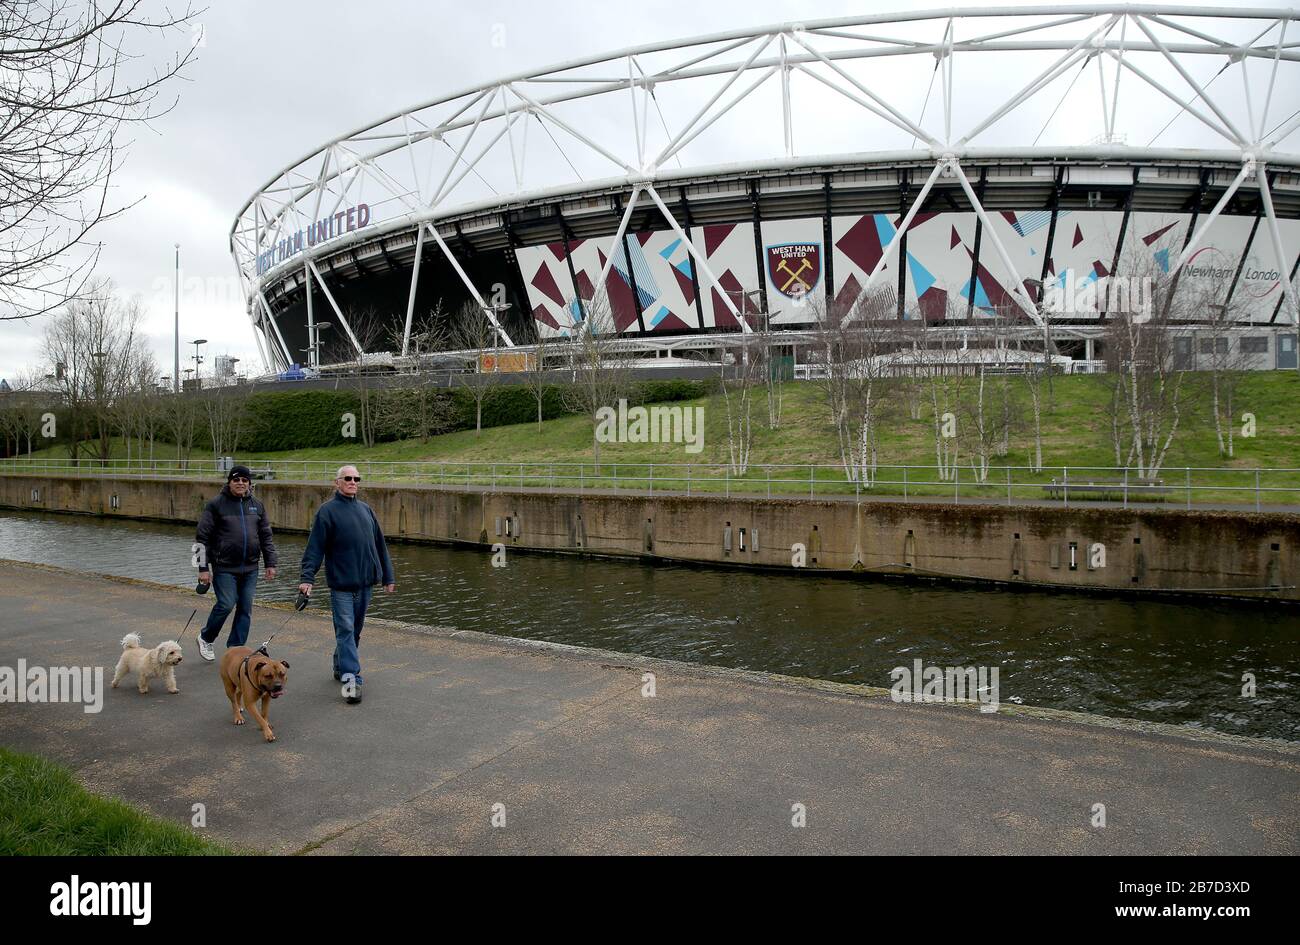 Les gens qui marchent leurs chiens près du London Stadium, stade du West Ham United football Club, après l'annonce de vendredi que la Premier League a suspendu tous les matchs jusqu'au samedi 4 avril 2020. Banque D'Images